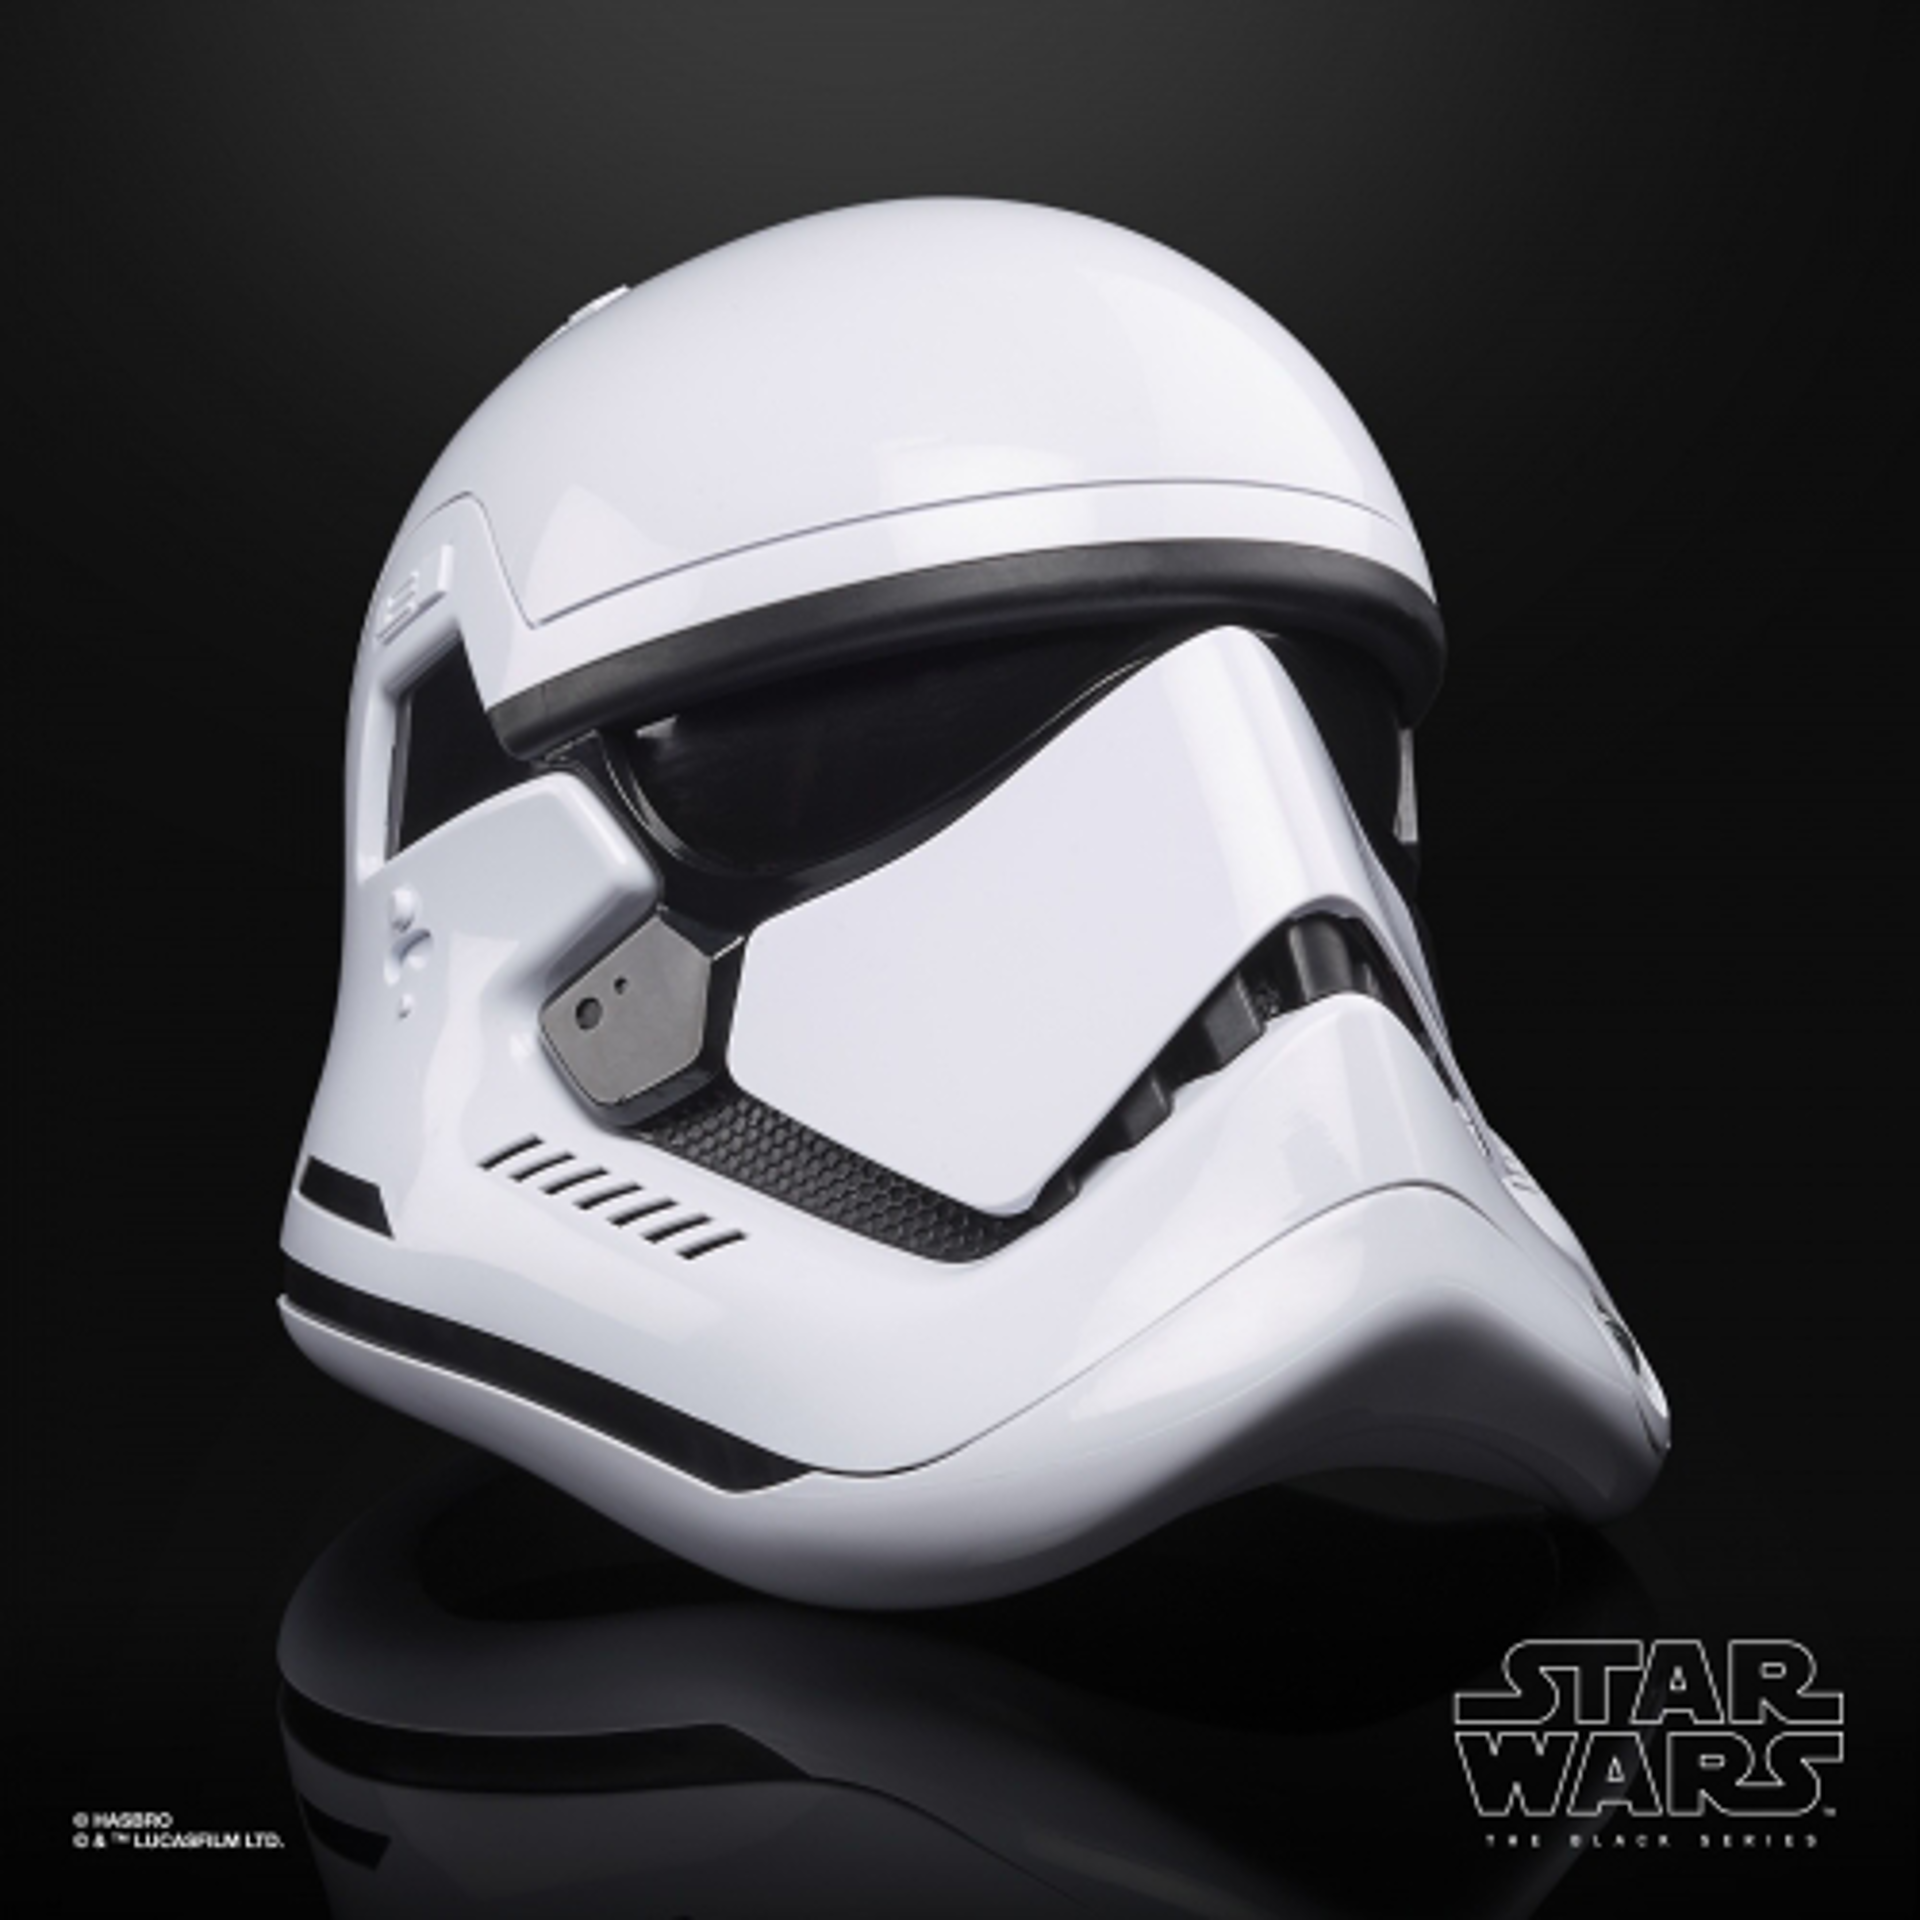 Star Wars The Black Series - Réplique 1/1 électronique du casque de Stormtrooper du Premier Ordre